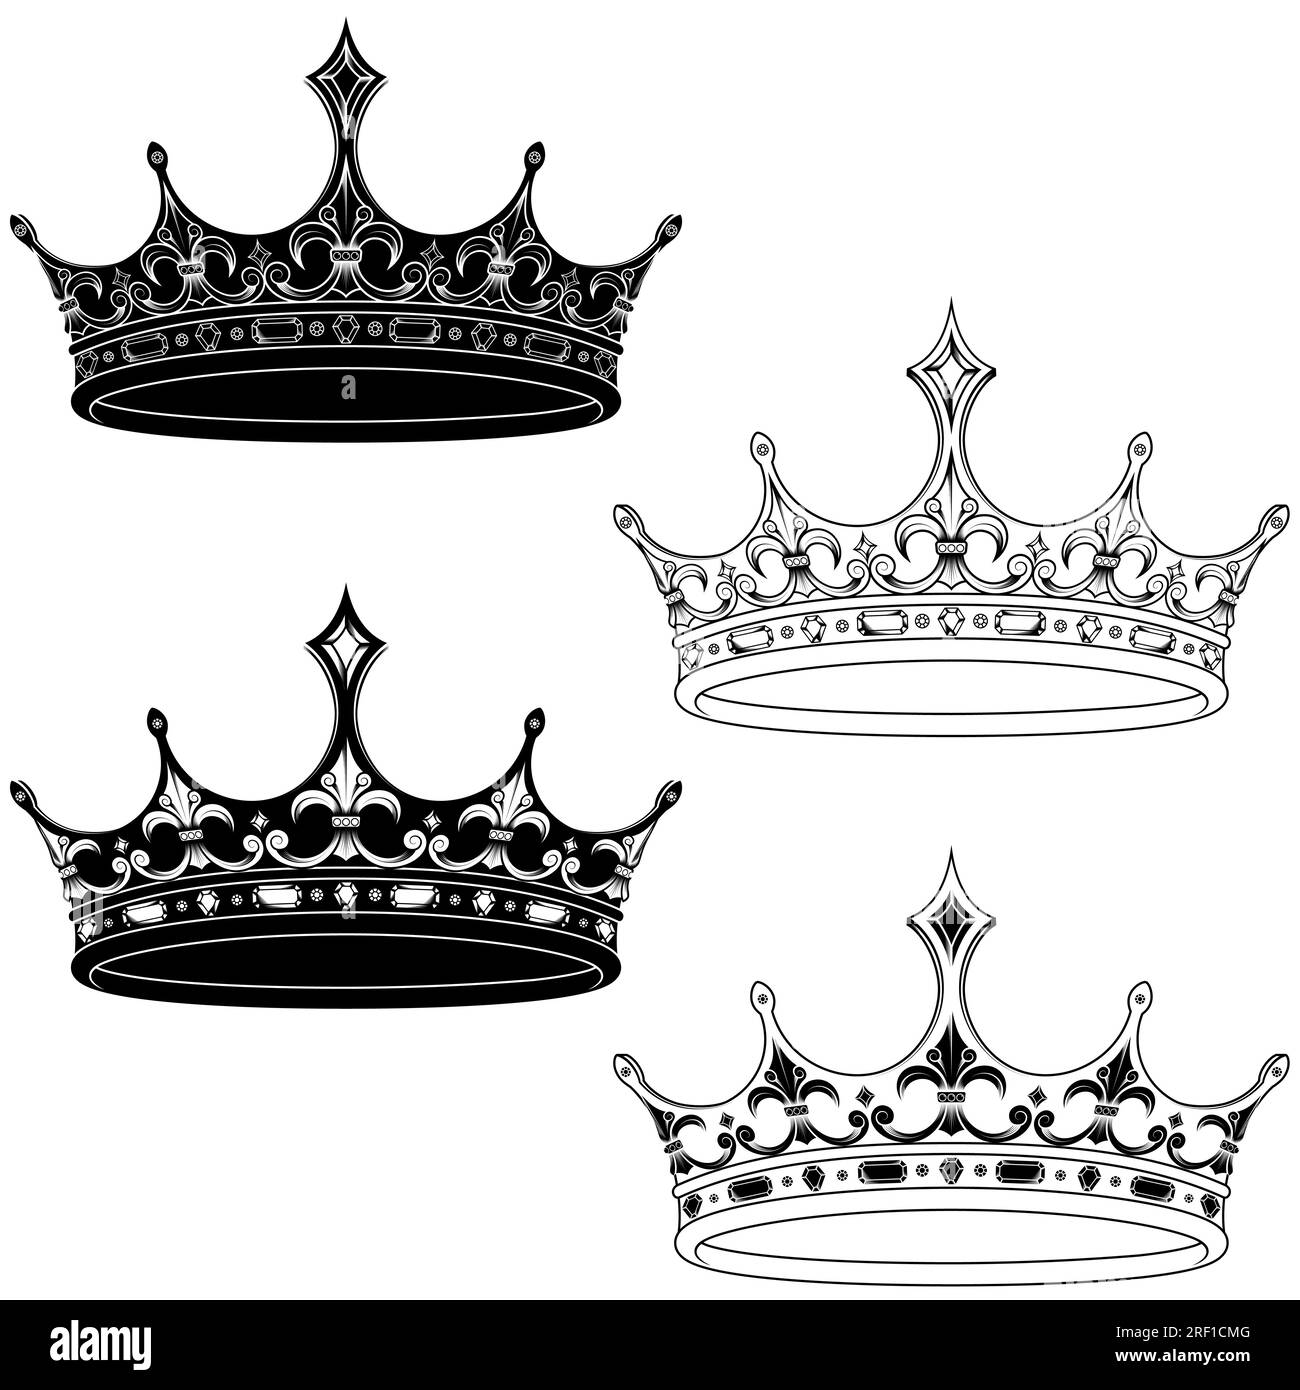 Vektordesign der goldenen Krone im mittelalterlichen Stil, Krone der europäischen Monarchie Stock Vektor